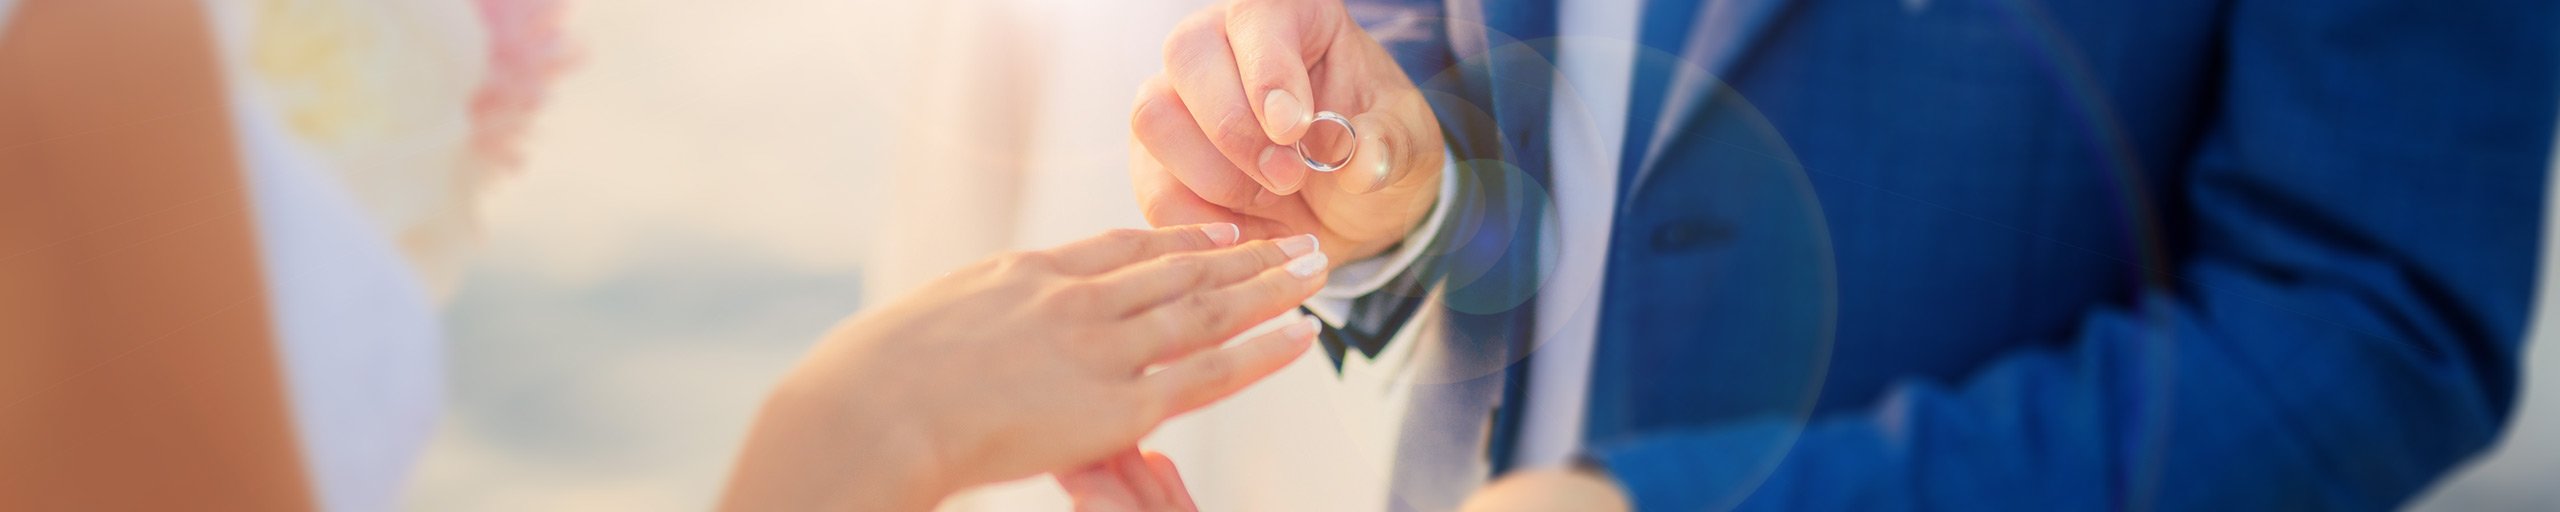 Ringen, trouwen of geregistreerd partnerschap